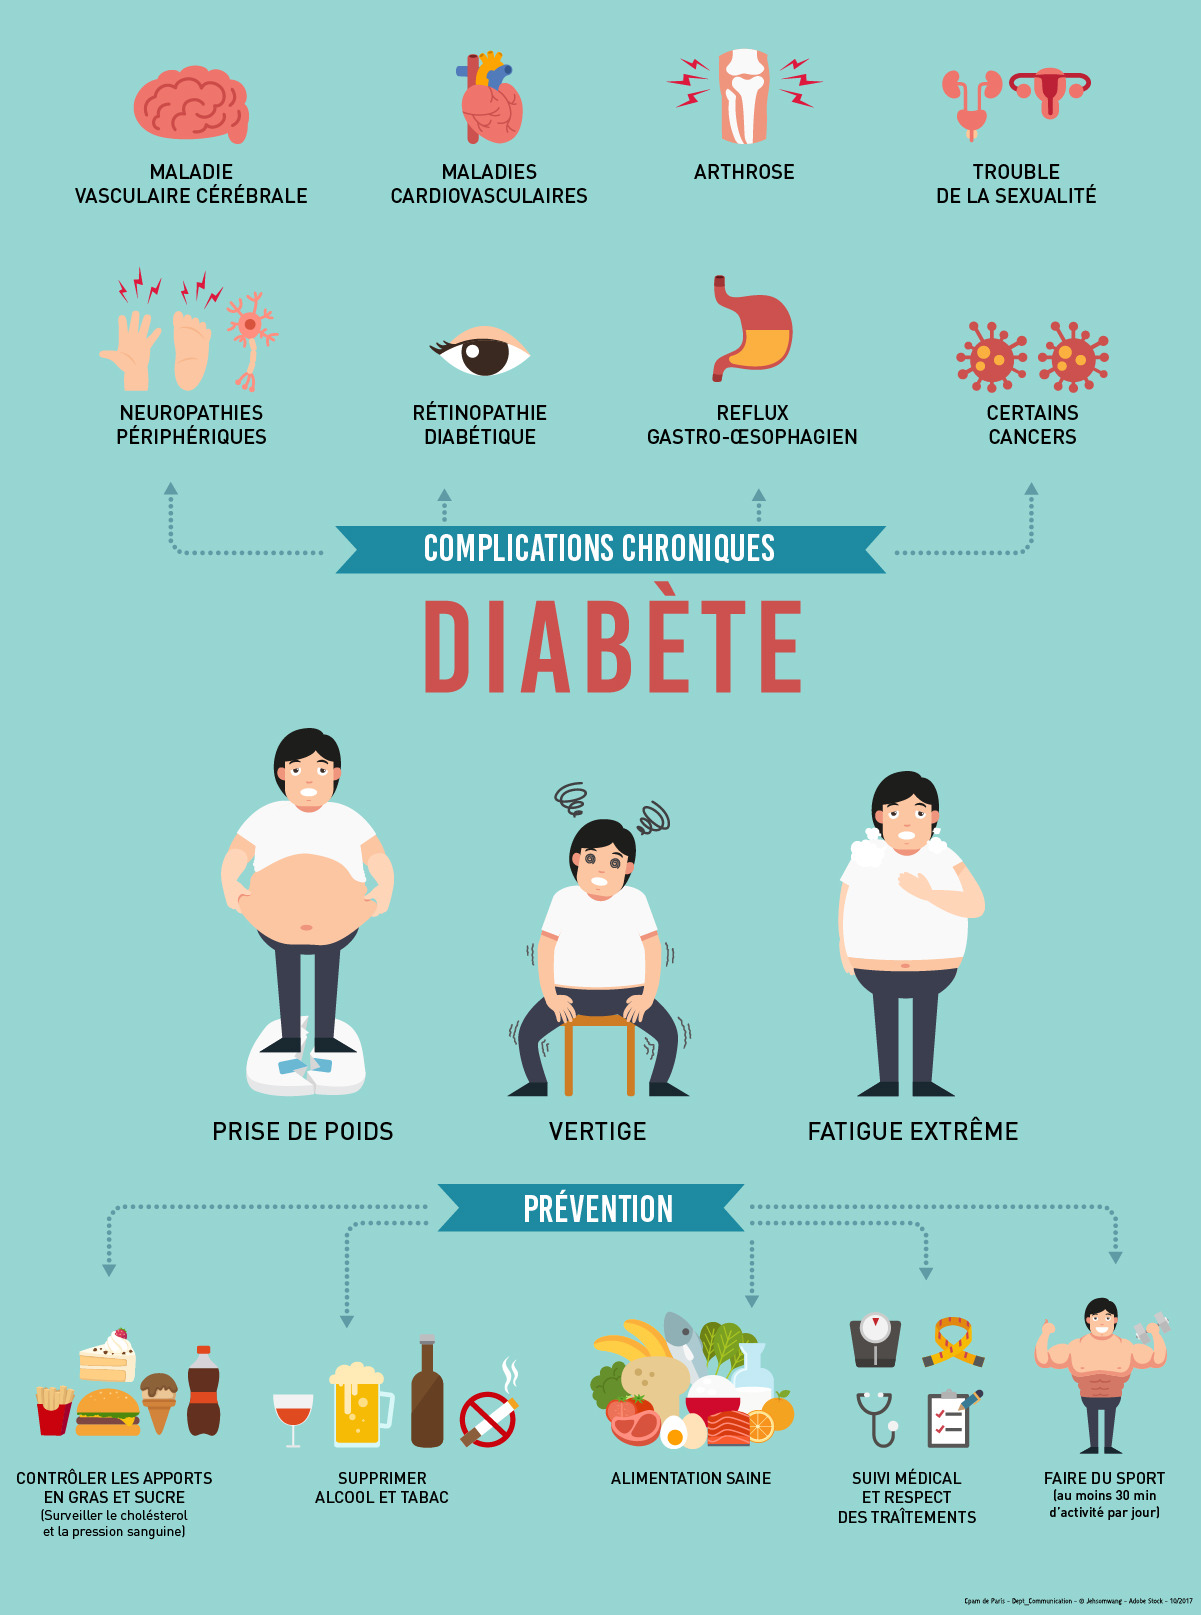 Qu'est ce que le régime pour les diabétiques ?